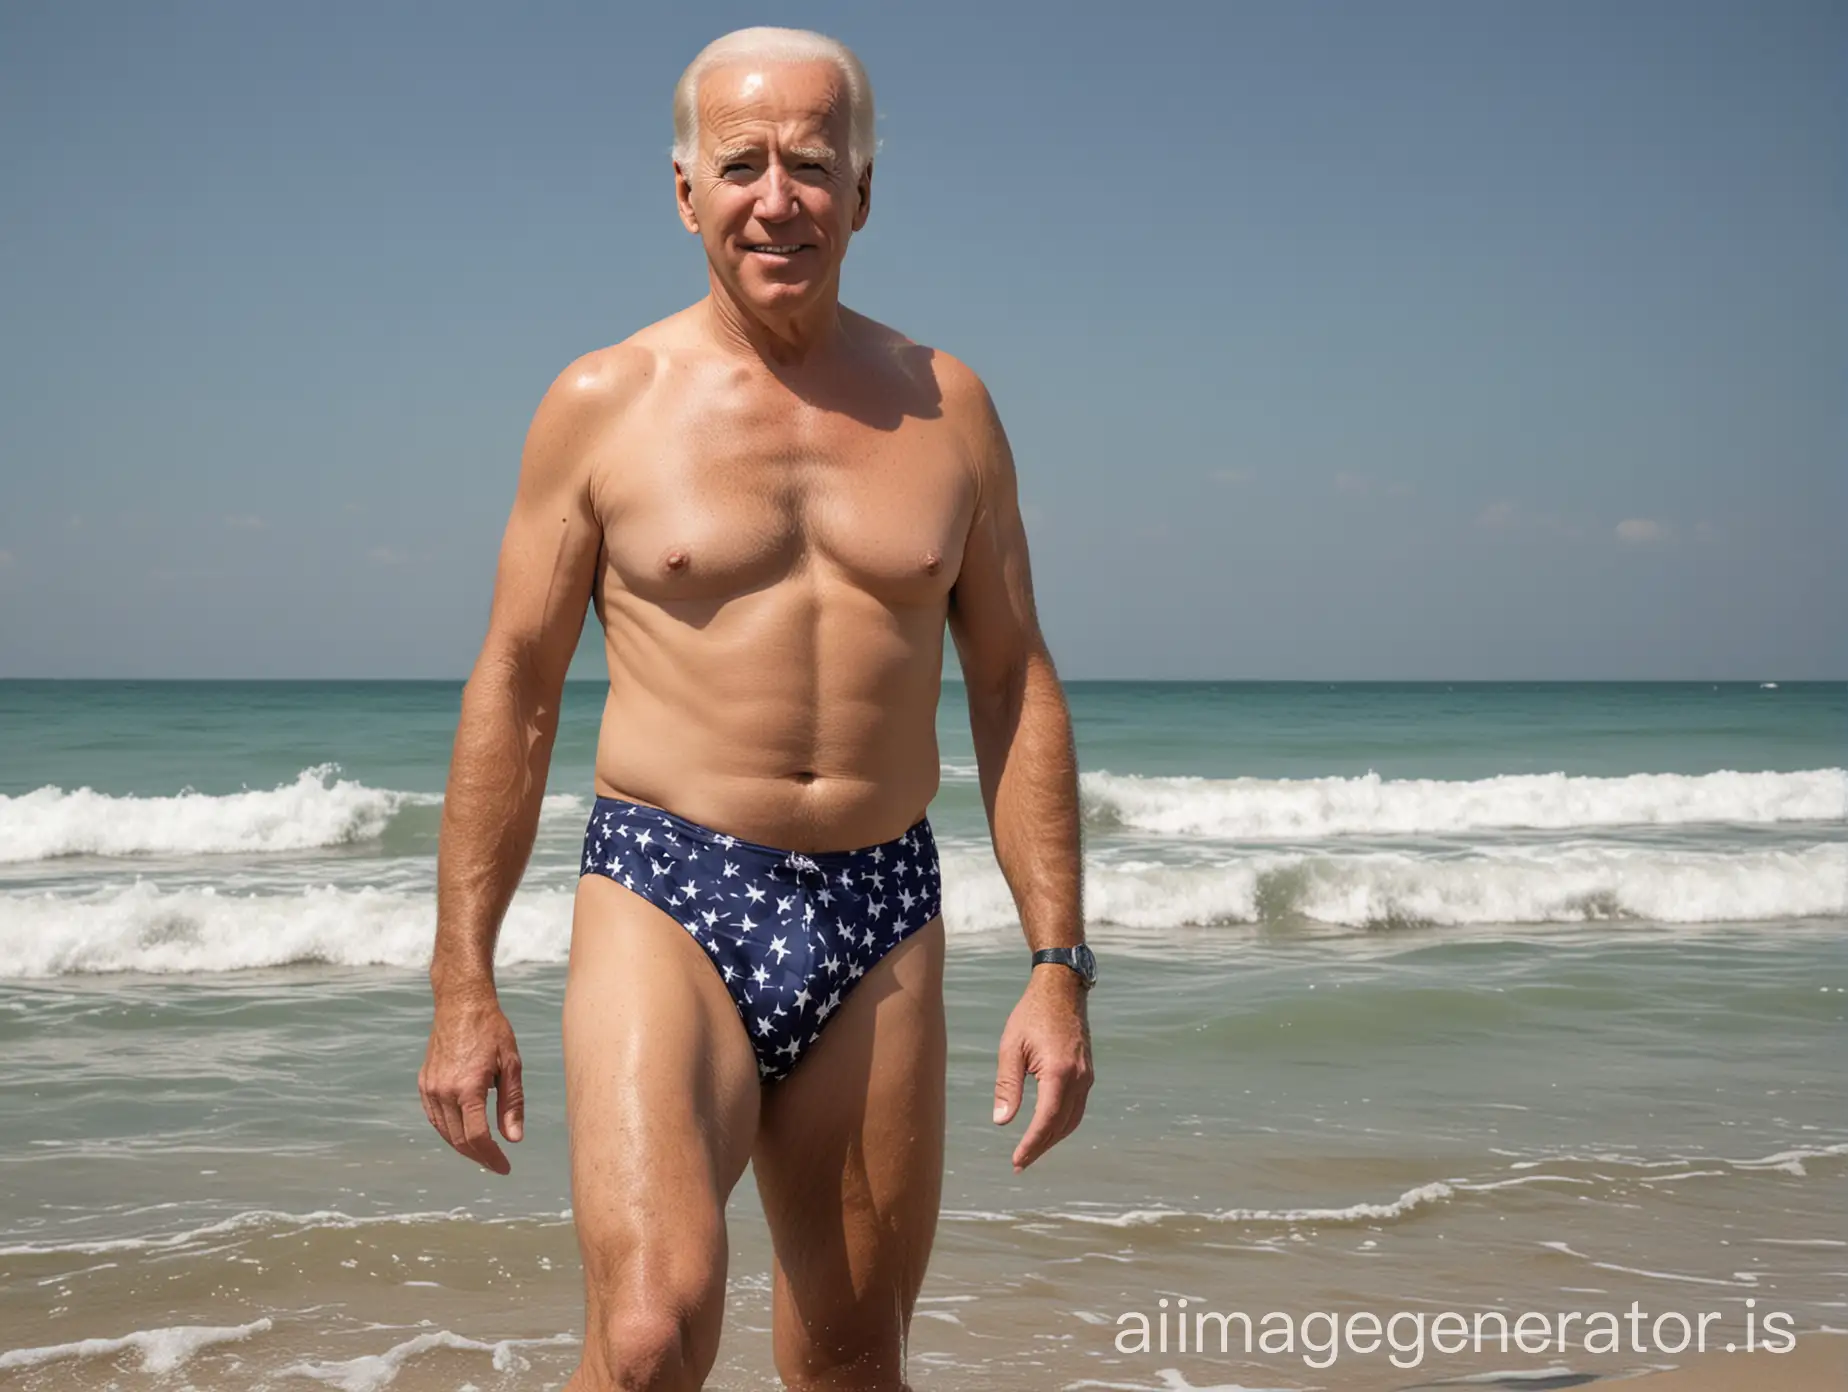 Create an image of president JOe biden in swim suit Alone